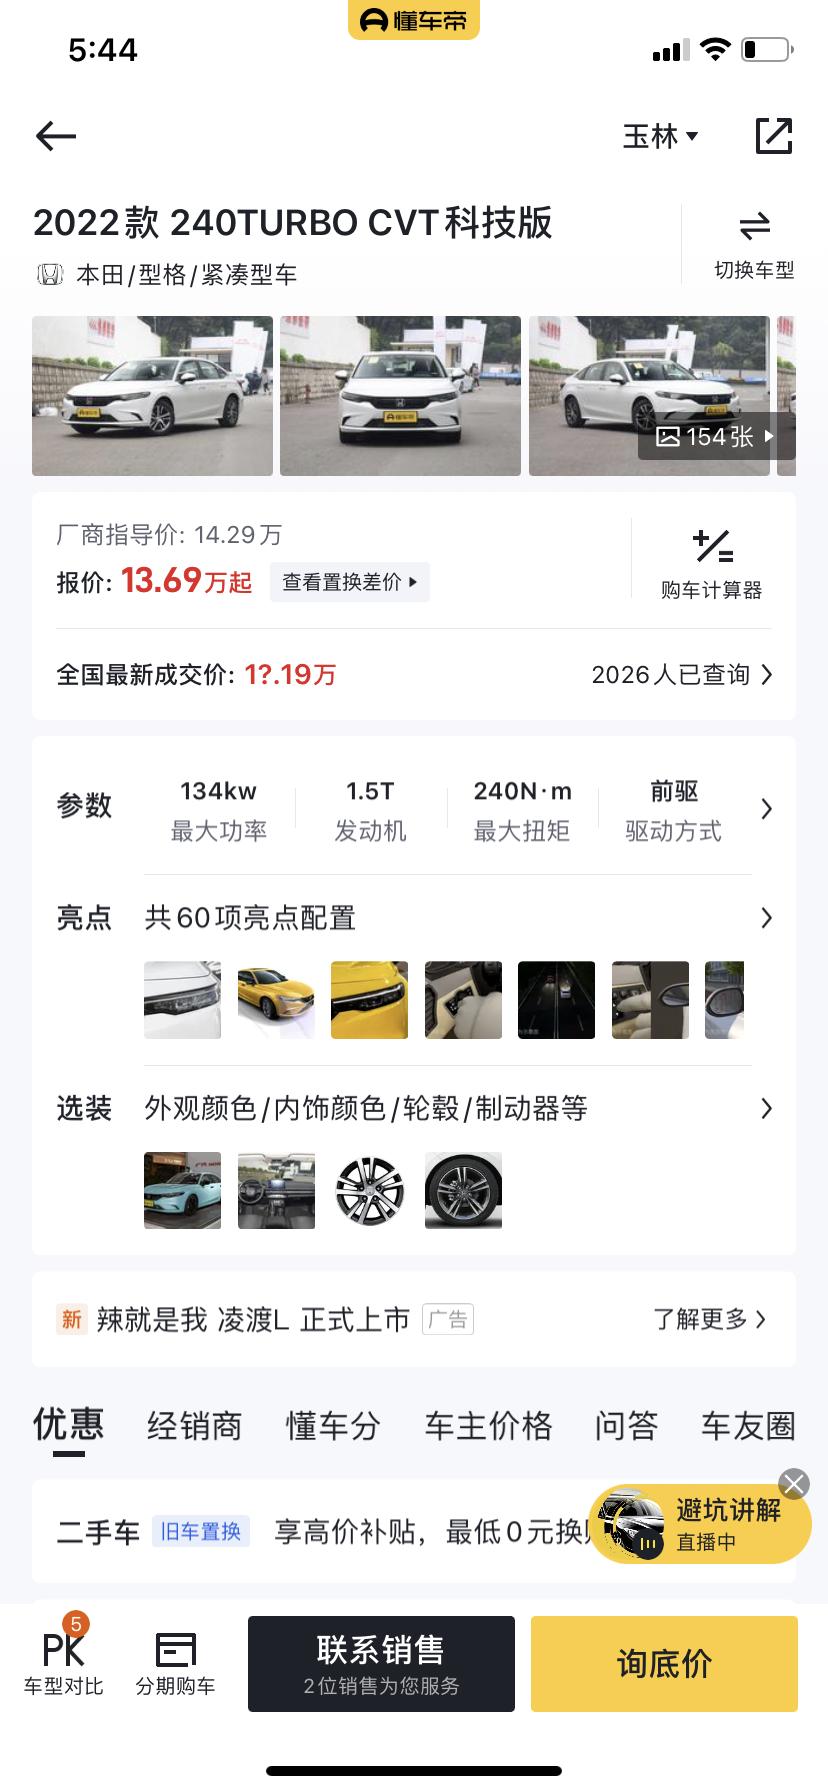 本田型格 科技版  裸车价格13.69   首付70000落地   分36期月供在多少呢     问销售他说17个以上 